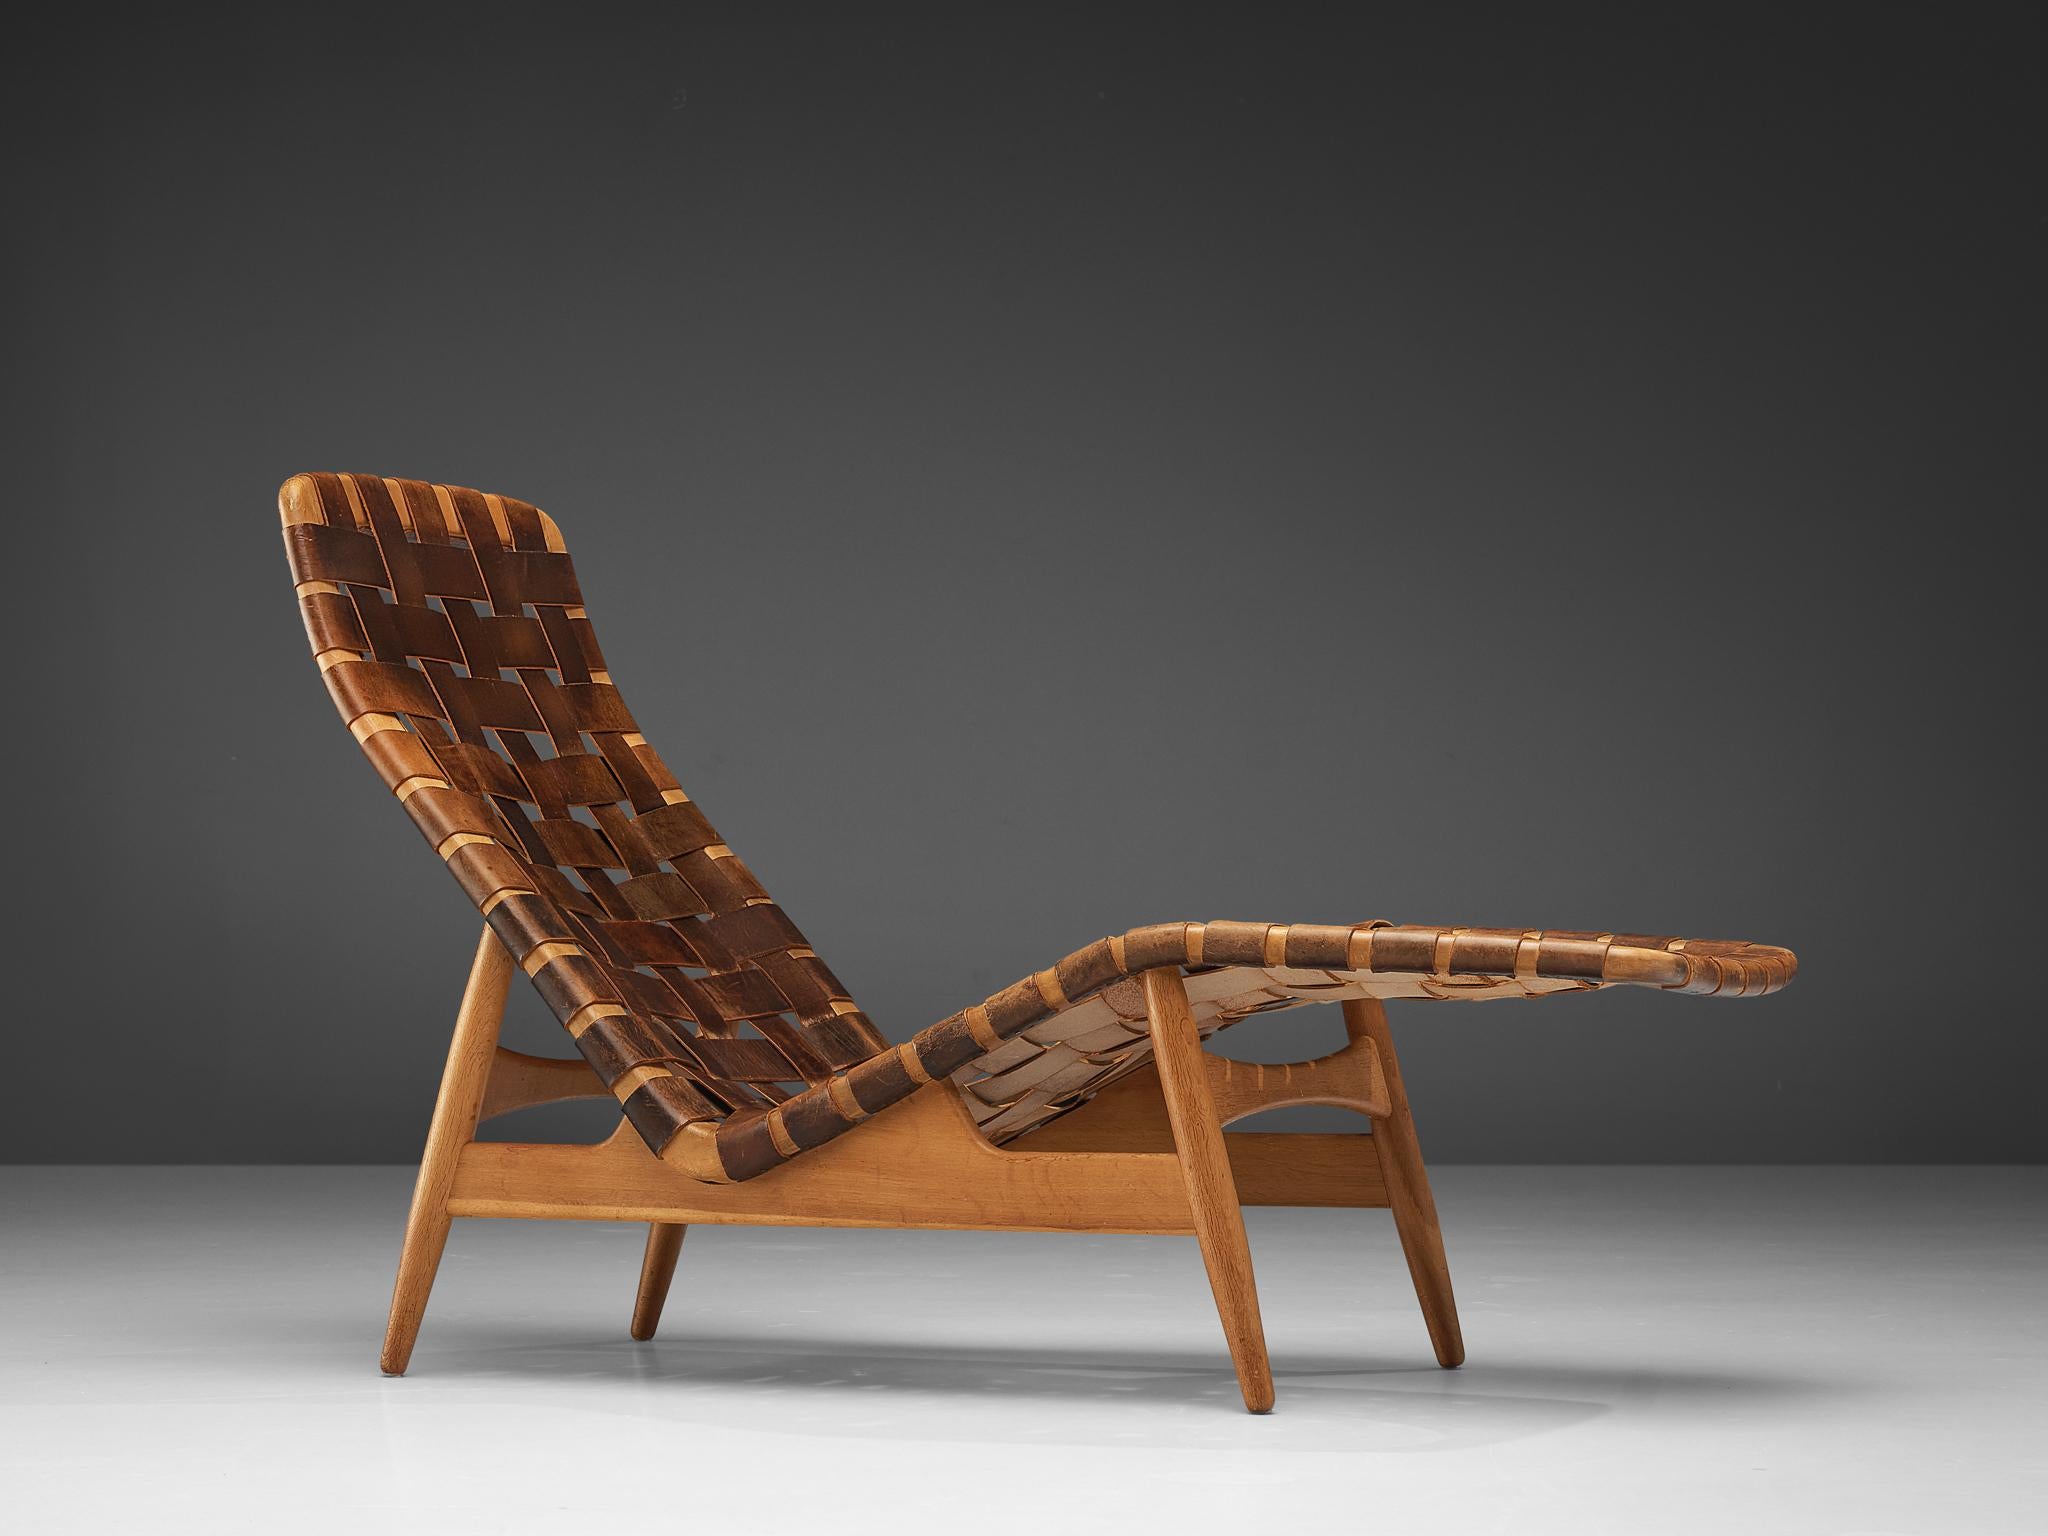 Arne Vodder für Bovirke, Chaiselongue, Leder, Eiche, Dänemark, 1950er Jahre.

Chaise longue, entworfen von Arne Vodder für Bovirke in den 1950er Jahren. Diese Chaiselongue hat einen offenen Rahmen aus Eichenholz und eine Sitzfläche aus geflochtenen